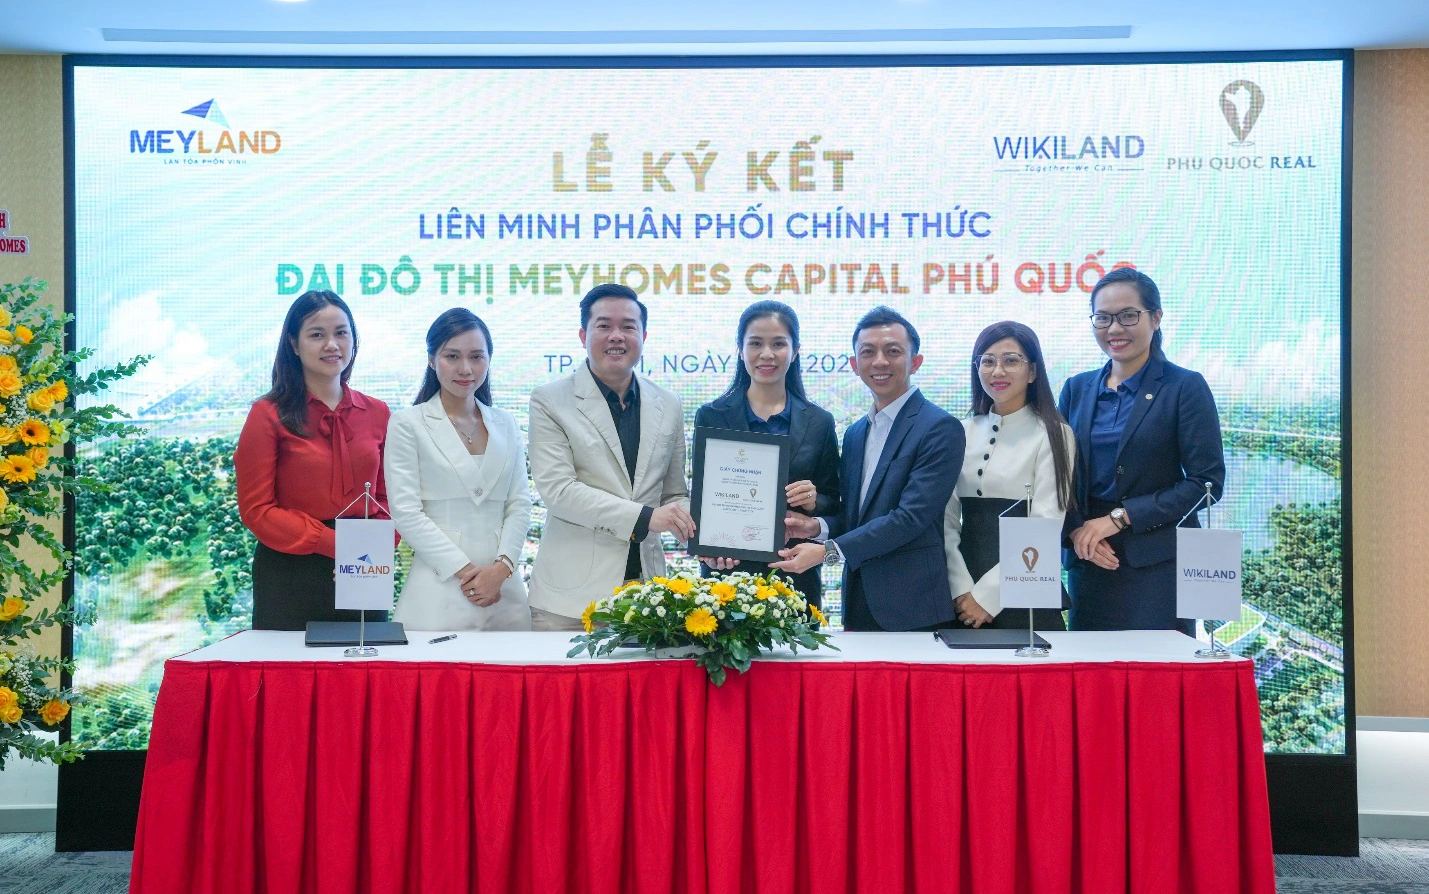 Phu Quoc Real – Thành viên PQR Corp chào sân thị trường BĐS Phú Quốc